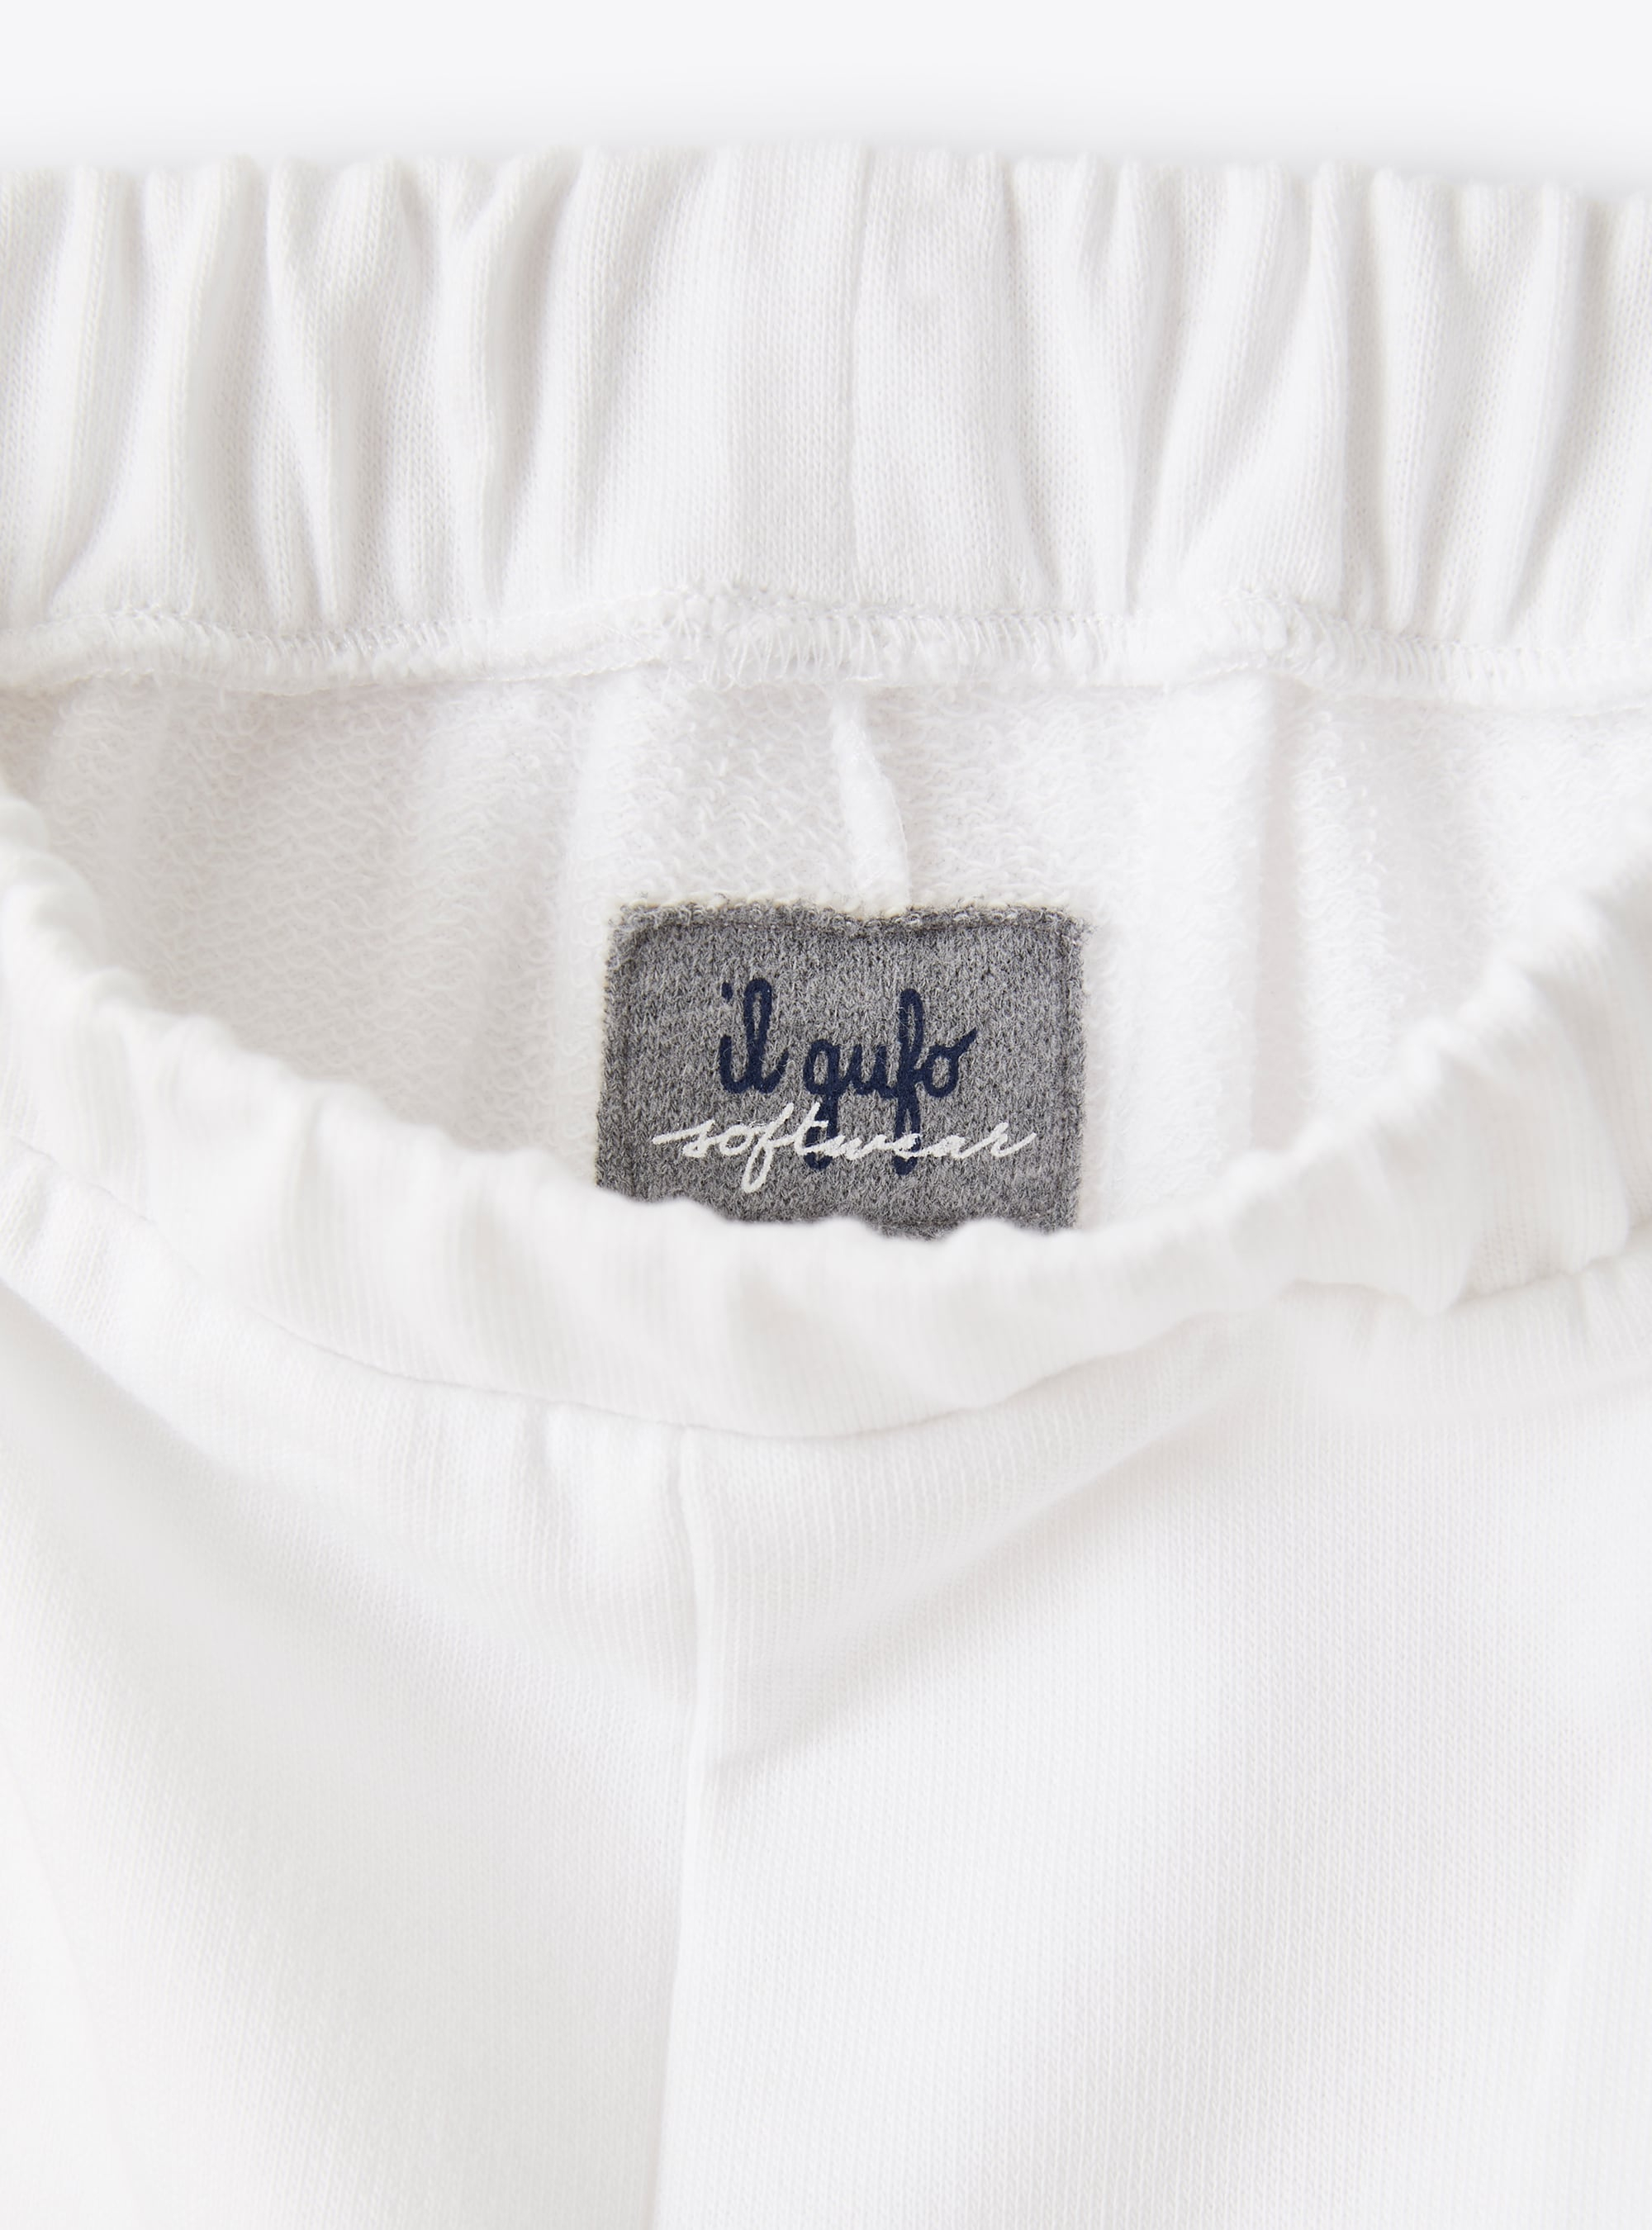 Trousers in white cotton fleece - White | Il Gufo